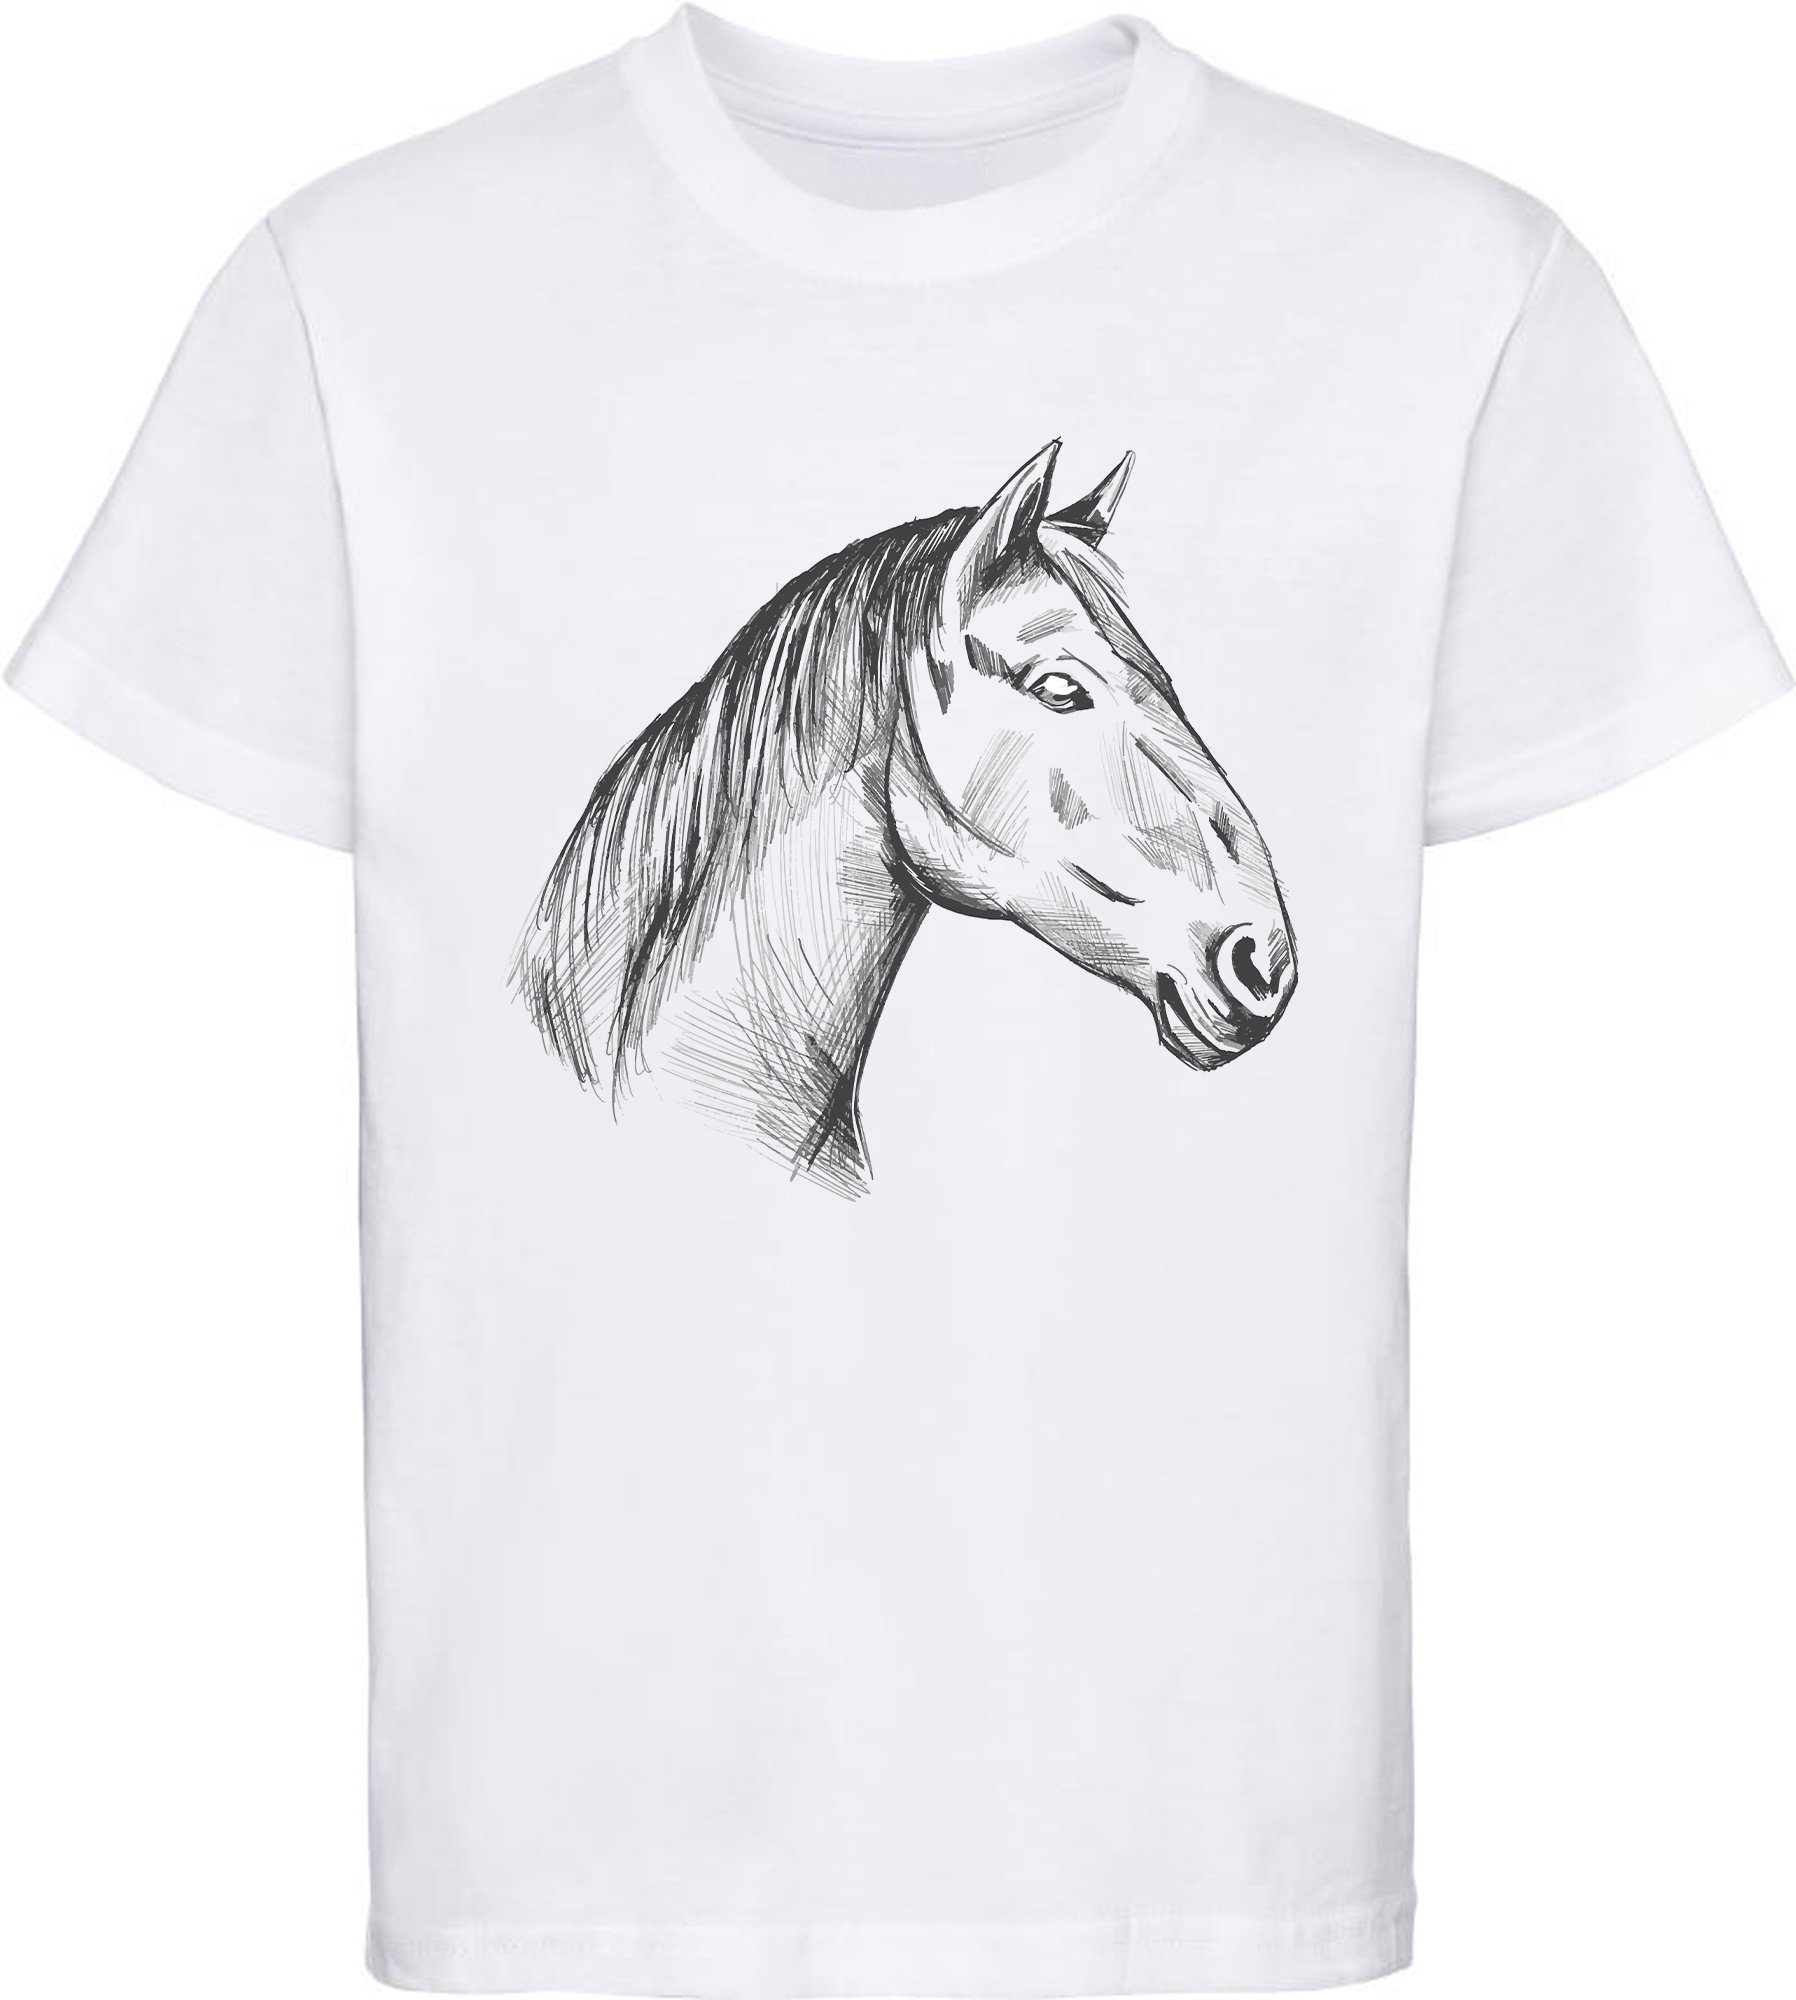 MyDesign24 Print-Shirt bedrucktes Mädchen T-Shirt gezeichneter Pferdekopf Baumwollshirt mit Aufdruck, i142 weiss | T-Shirts